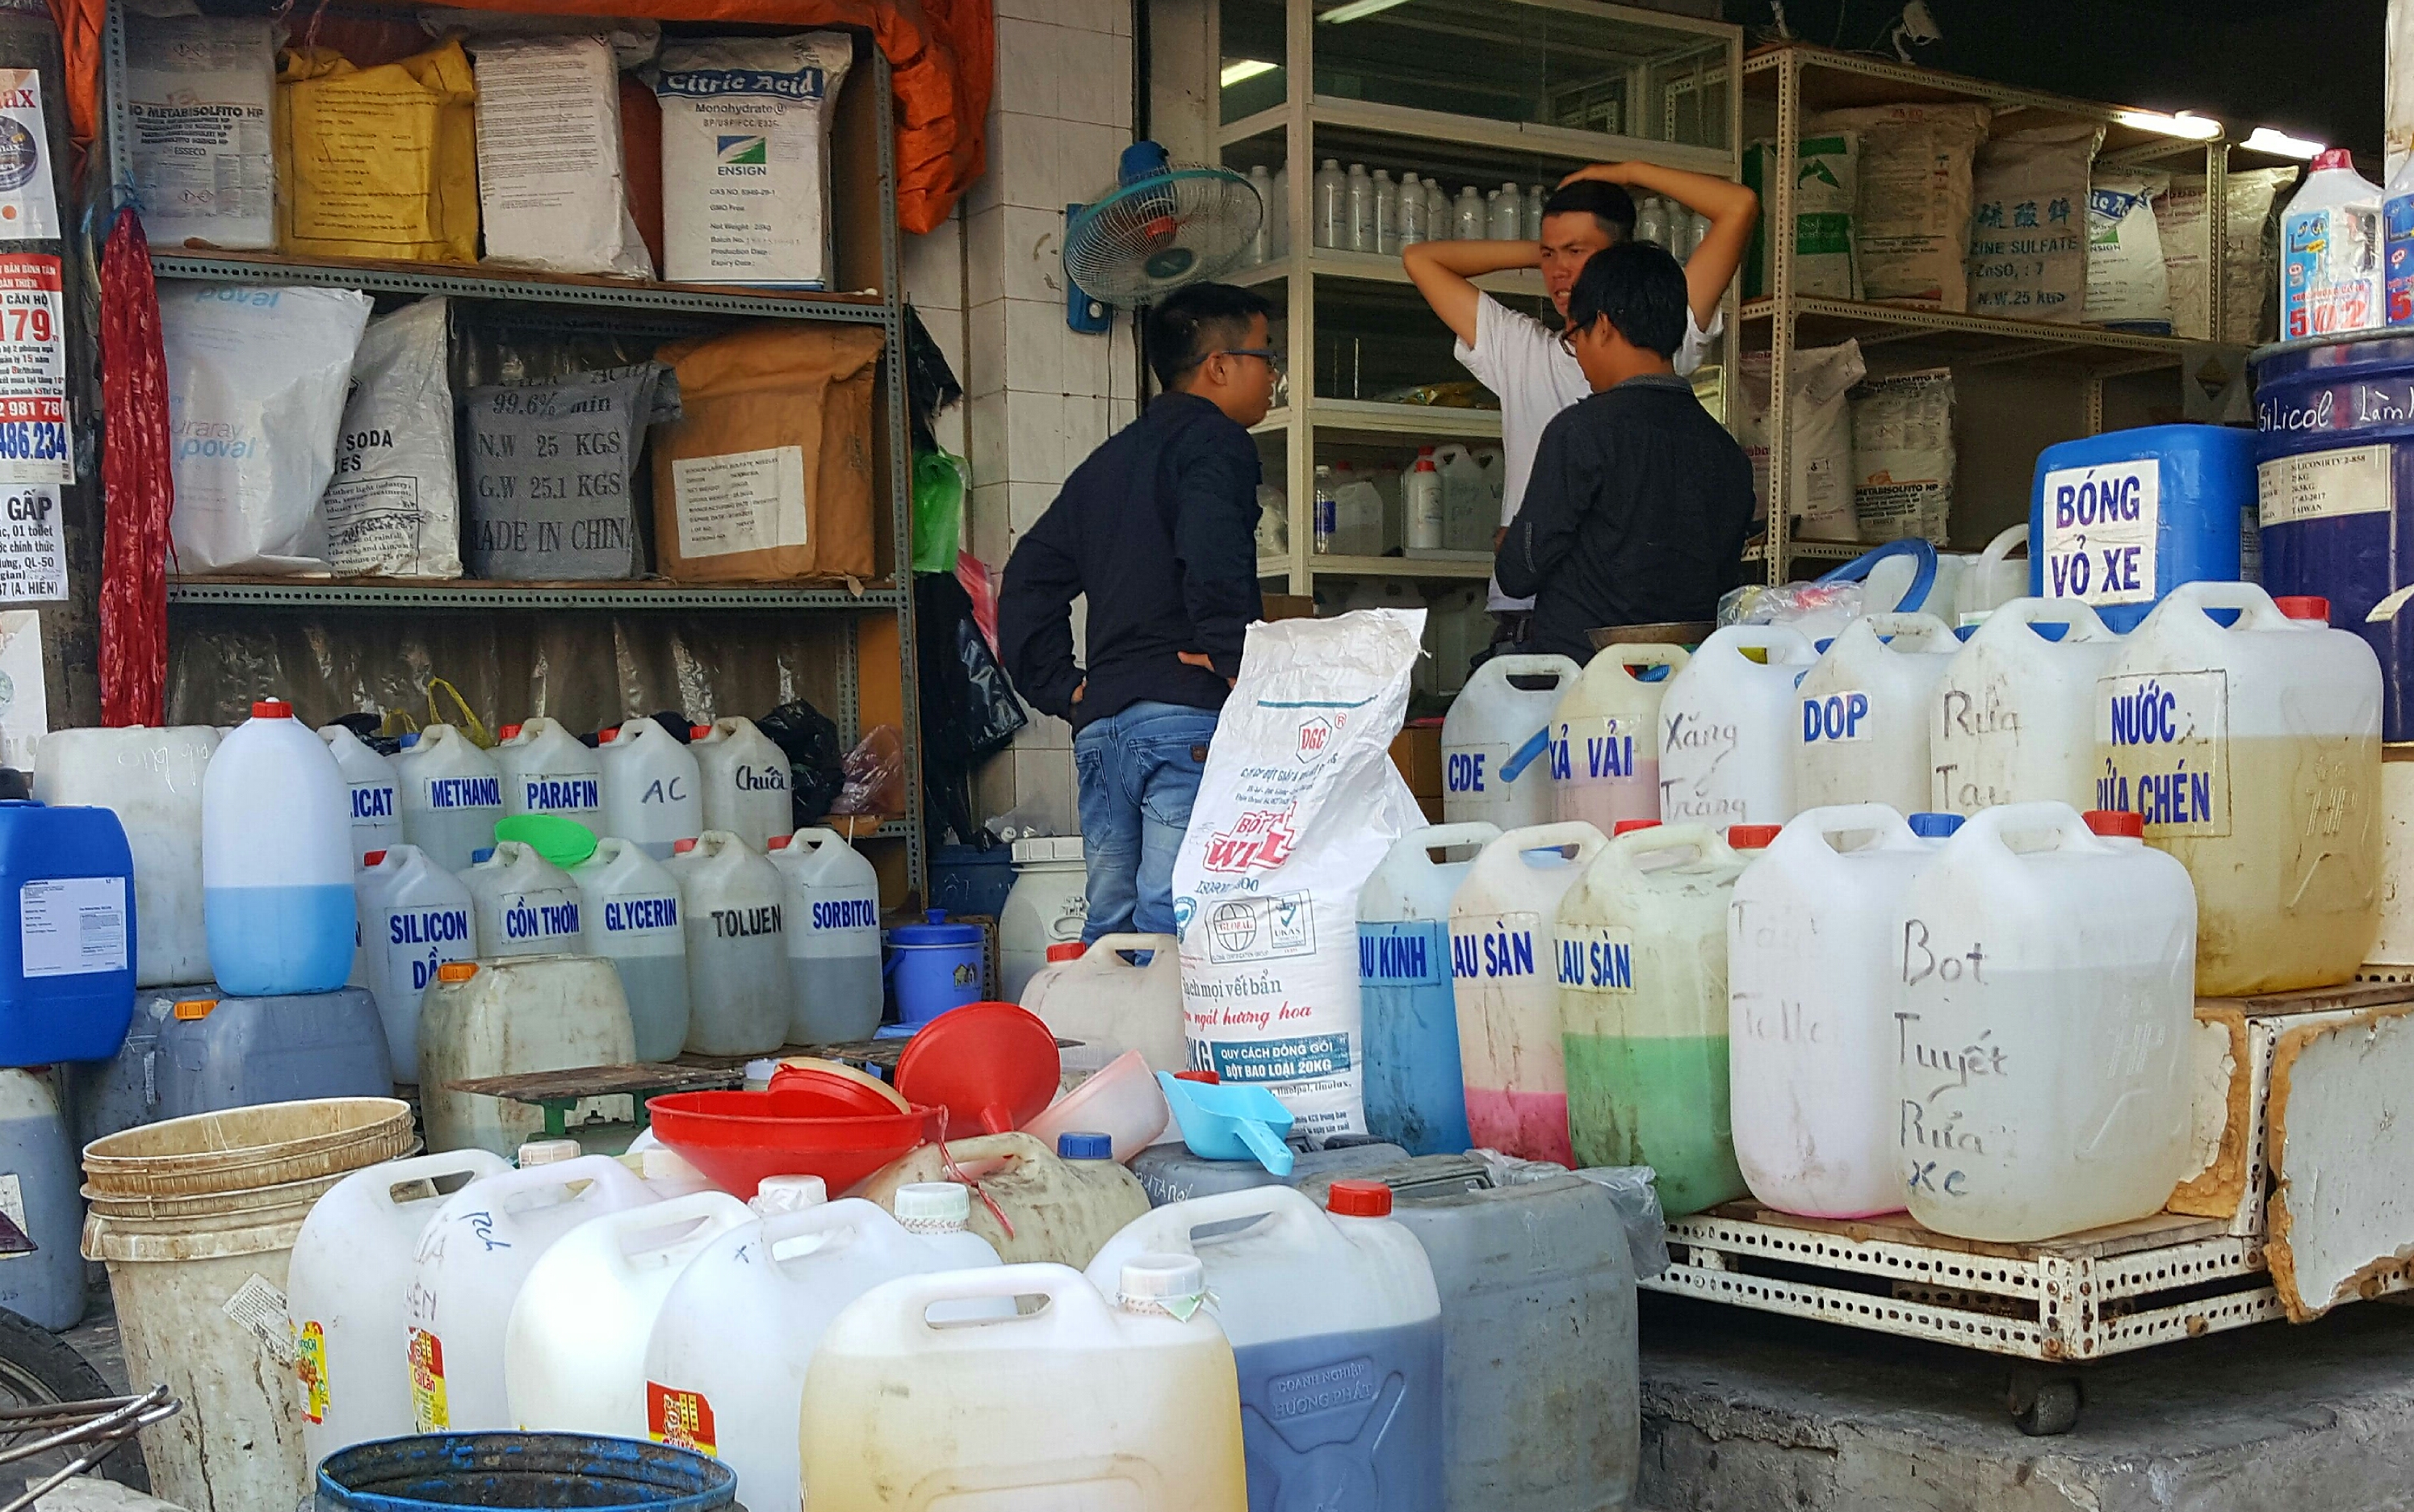 Người chủ cửa hàng bán hóa chất ở chợ Kim Biên nhếch mặt, vội vã thanh minh không có bán a xit sunfuric bởi “lính” trót giới thiệu cho chúng tôi là có - Ảnh: Độc Lập